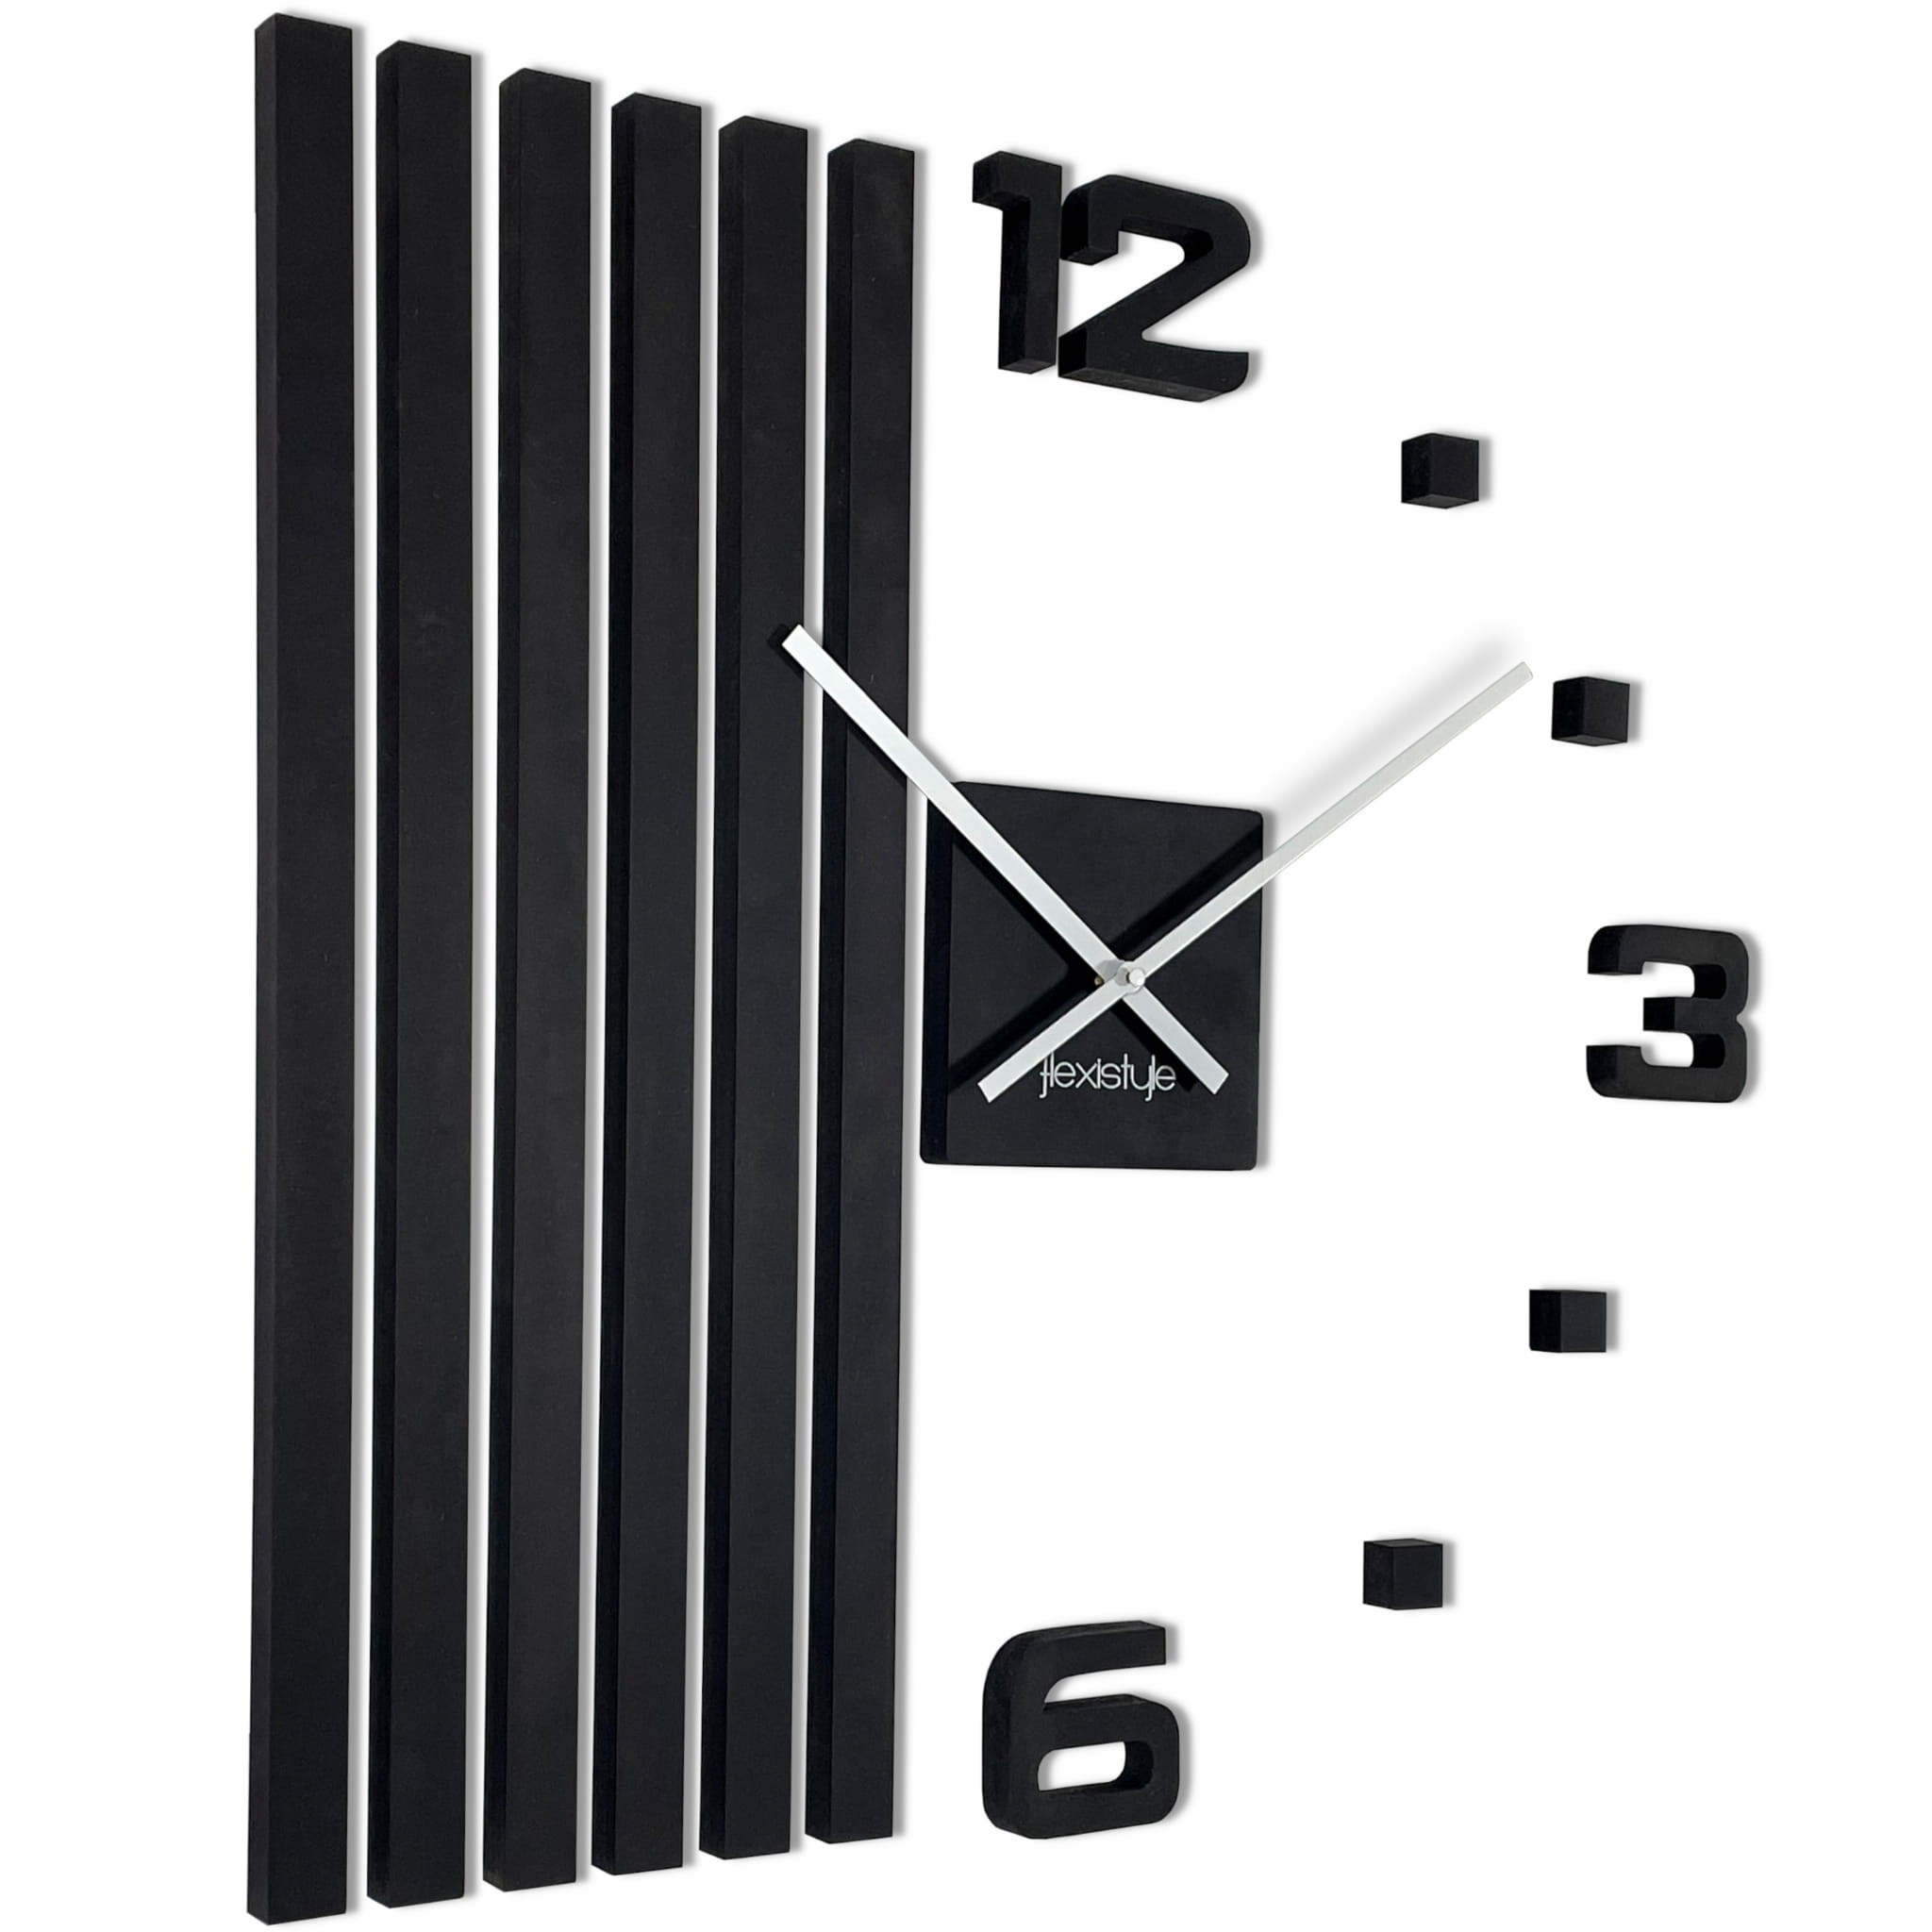 Luxusní nastěnné dřevěné hodiny v černé barvě